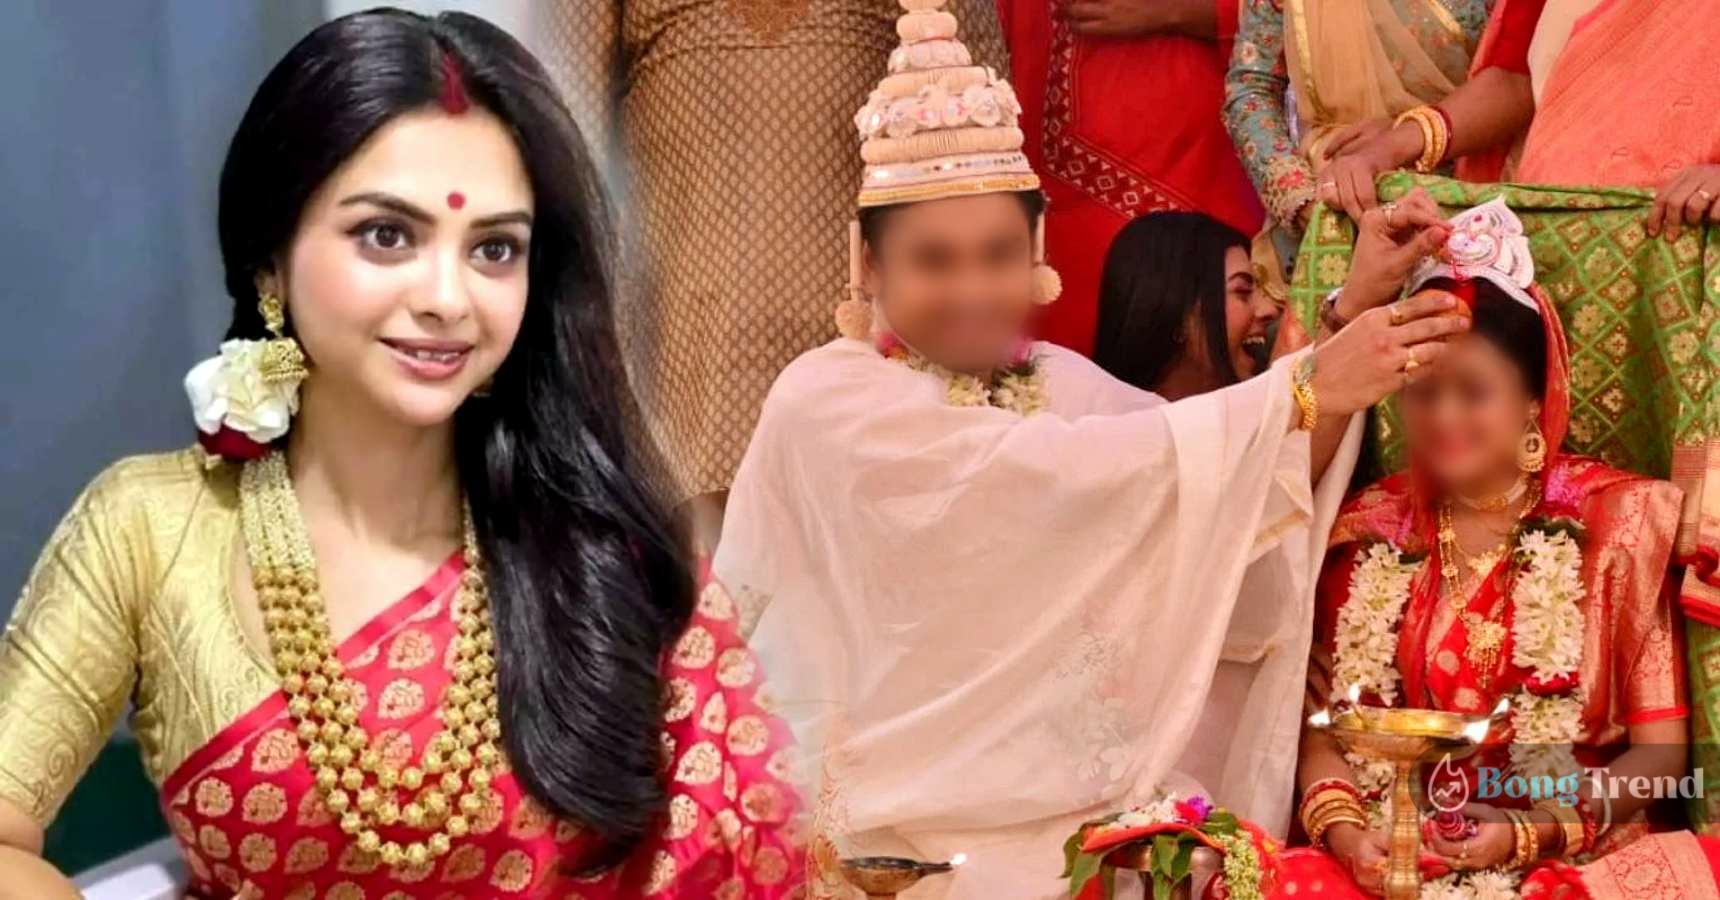 Gantchchora actress Suparna Patra got married to boyfriend Samarjit photos